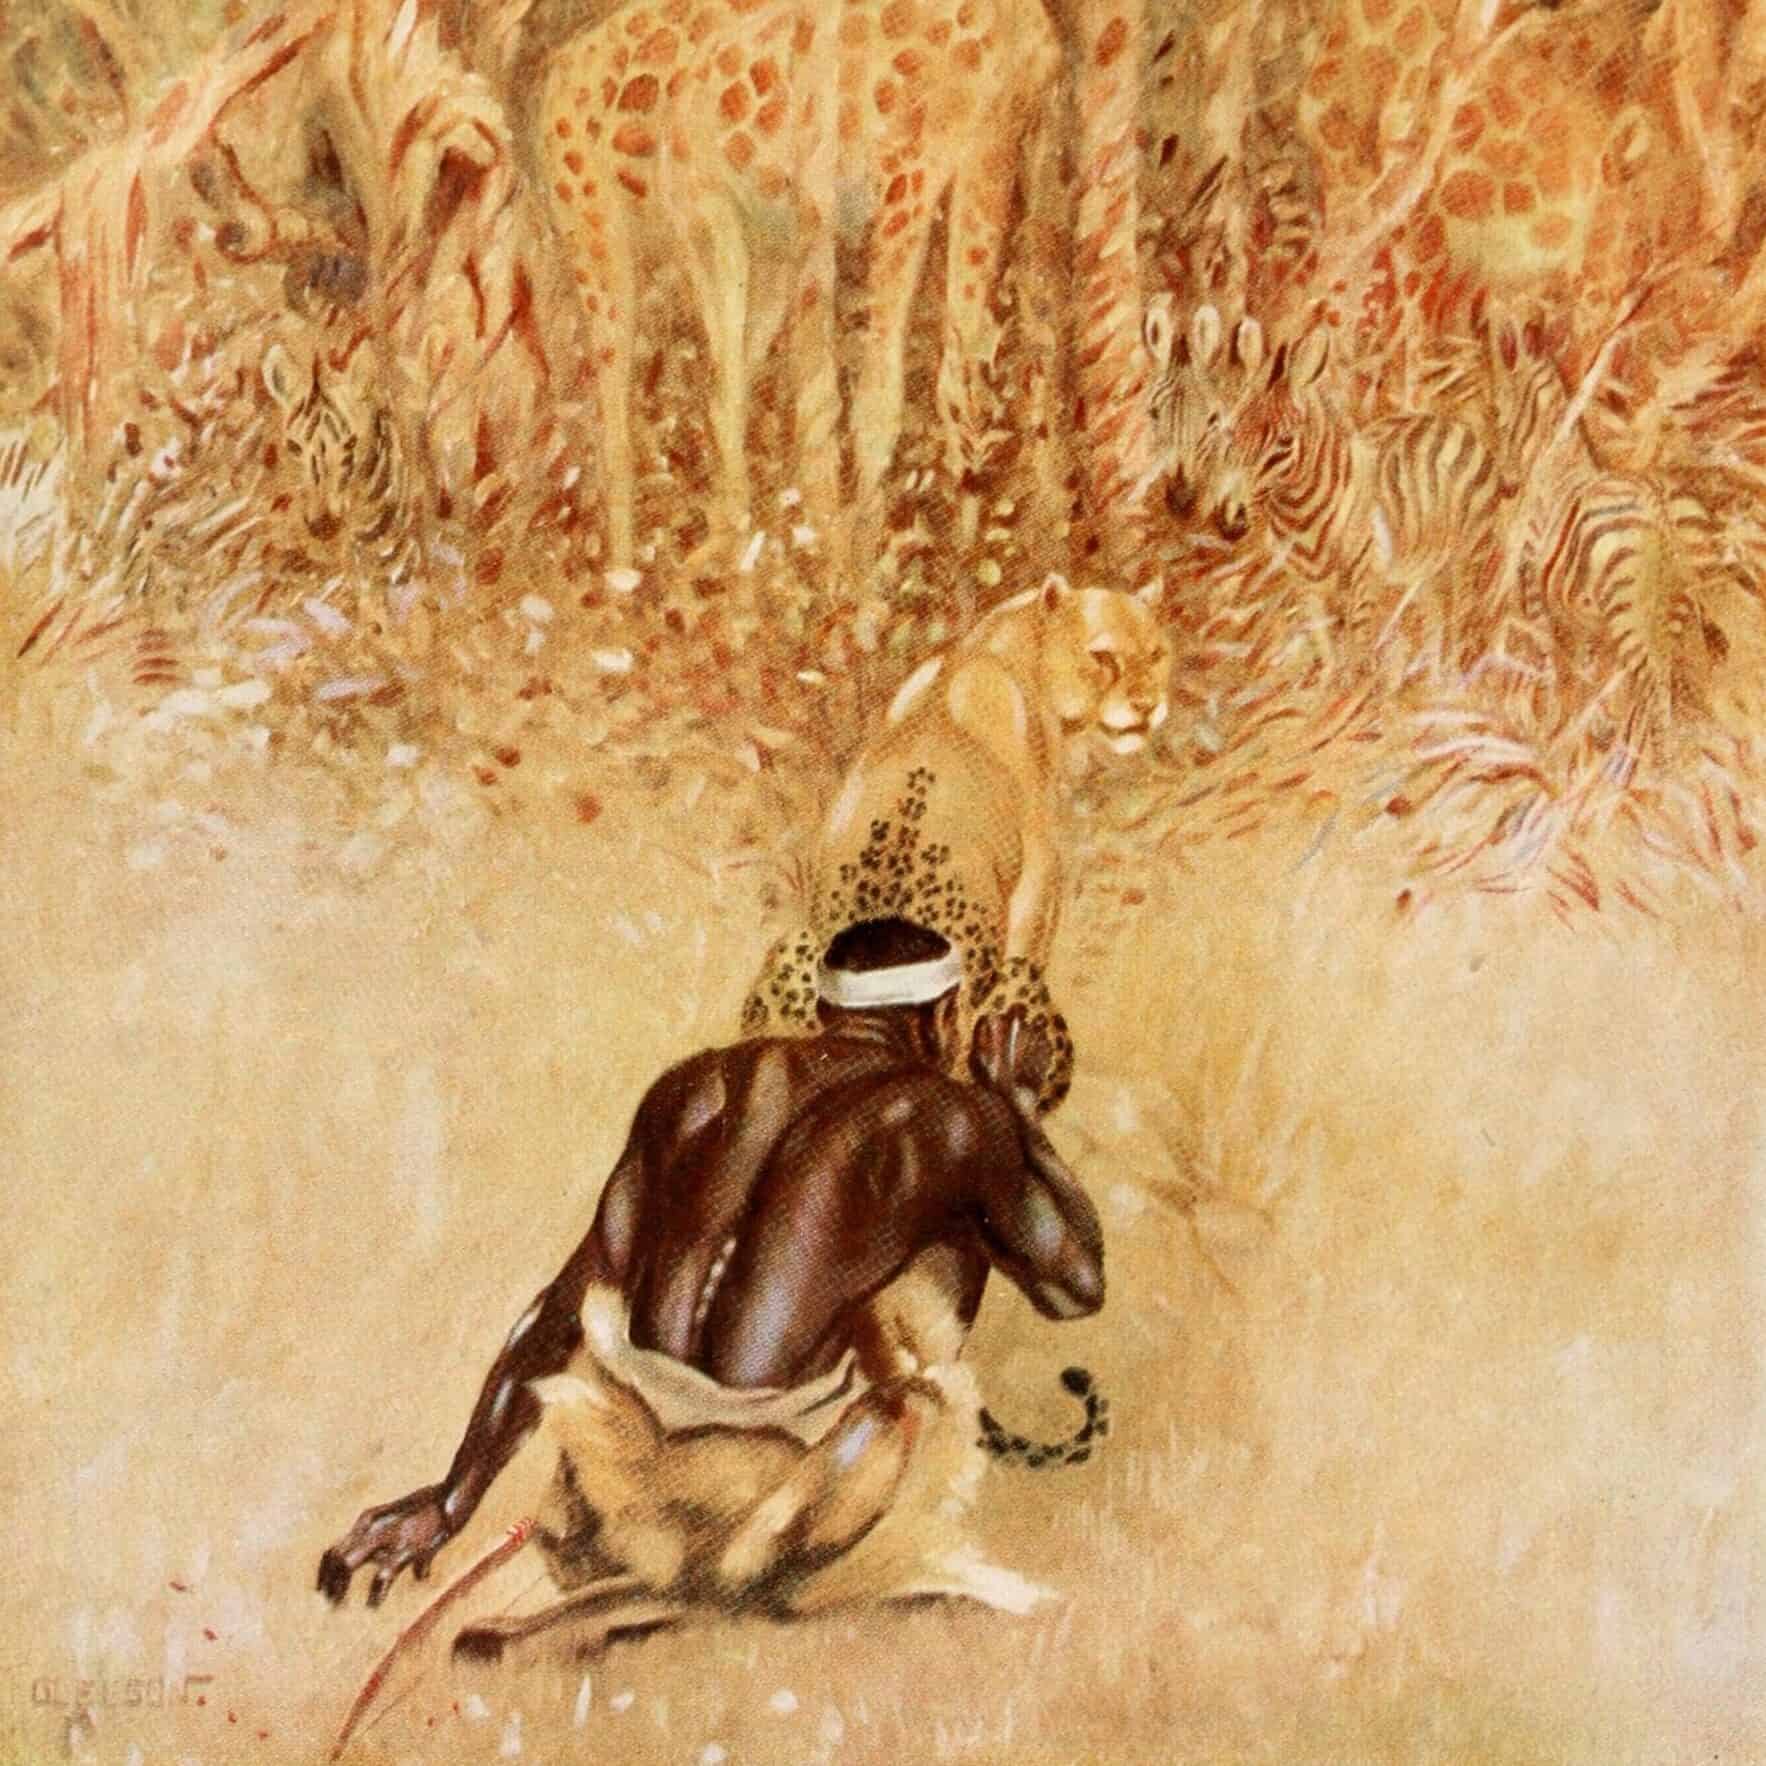 Illustration du Léopard et ses taches, extraite de l'éd. 1912 des Histoires comme ça de Rudyard Kipling